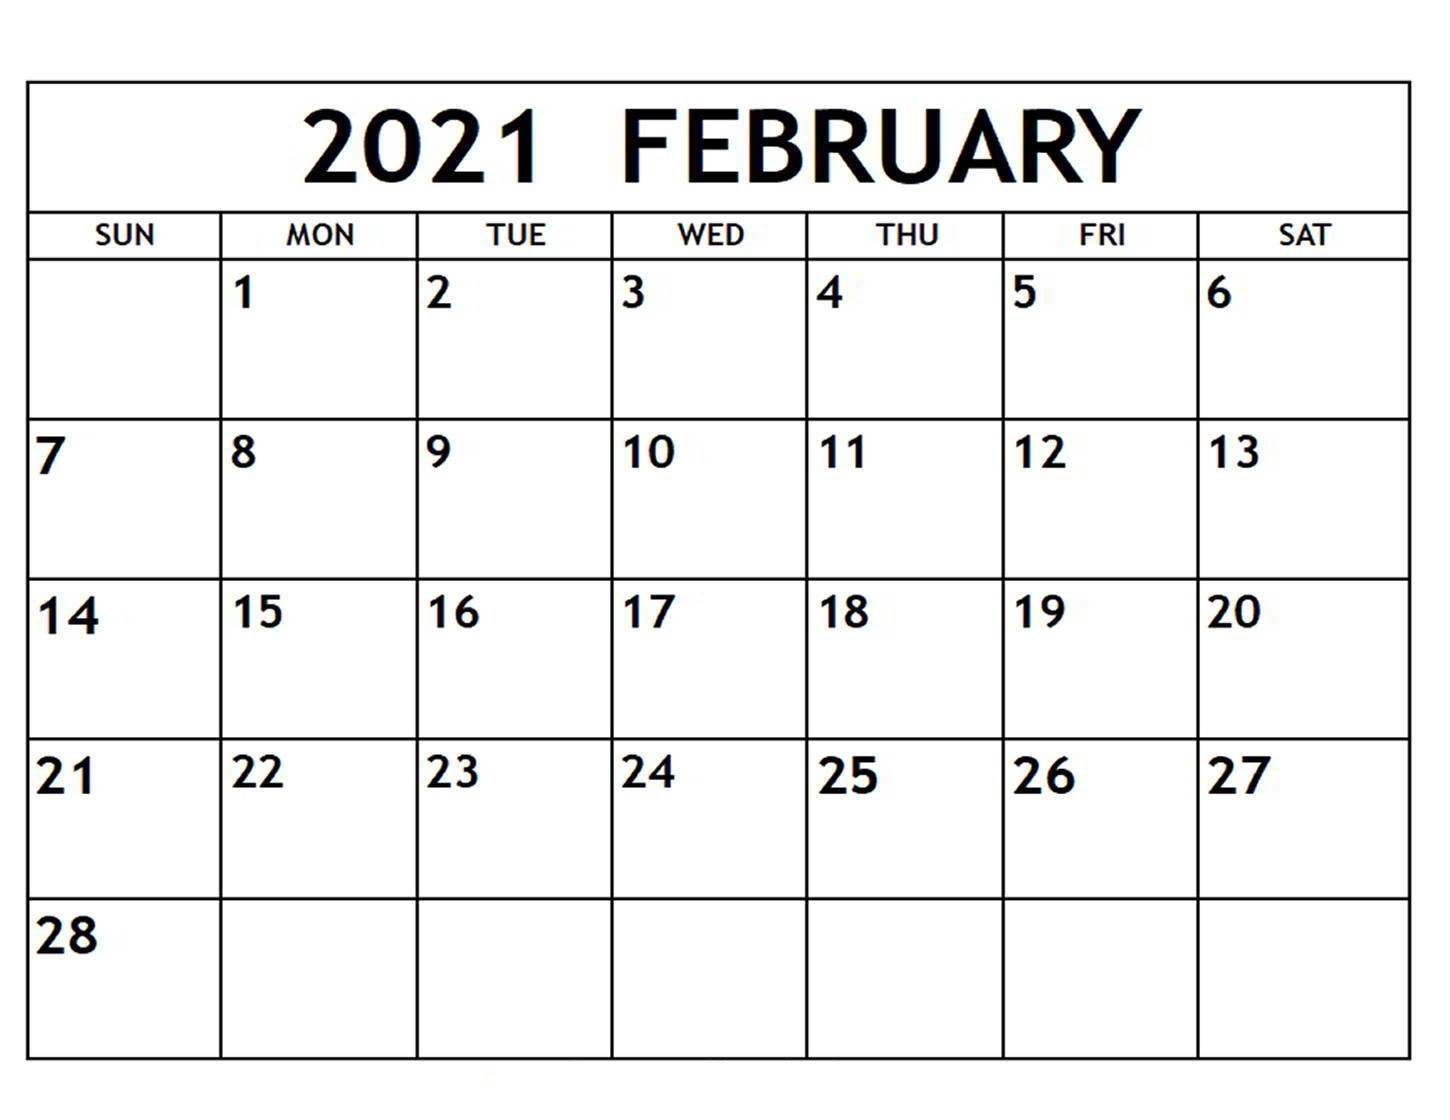 February 2021 Calendar Printable With Holidays - Free Printable Blank Holidays Calendar Wishes-Fill In Calendar September 2021